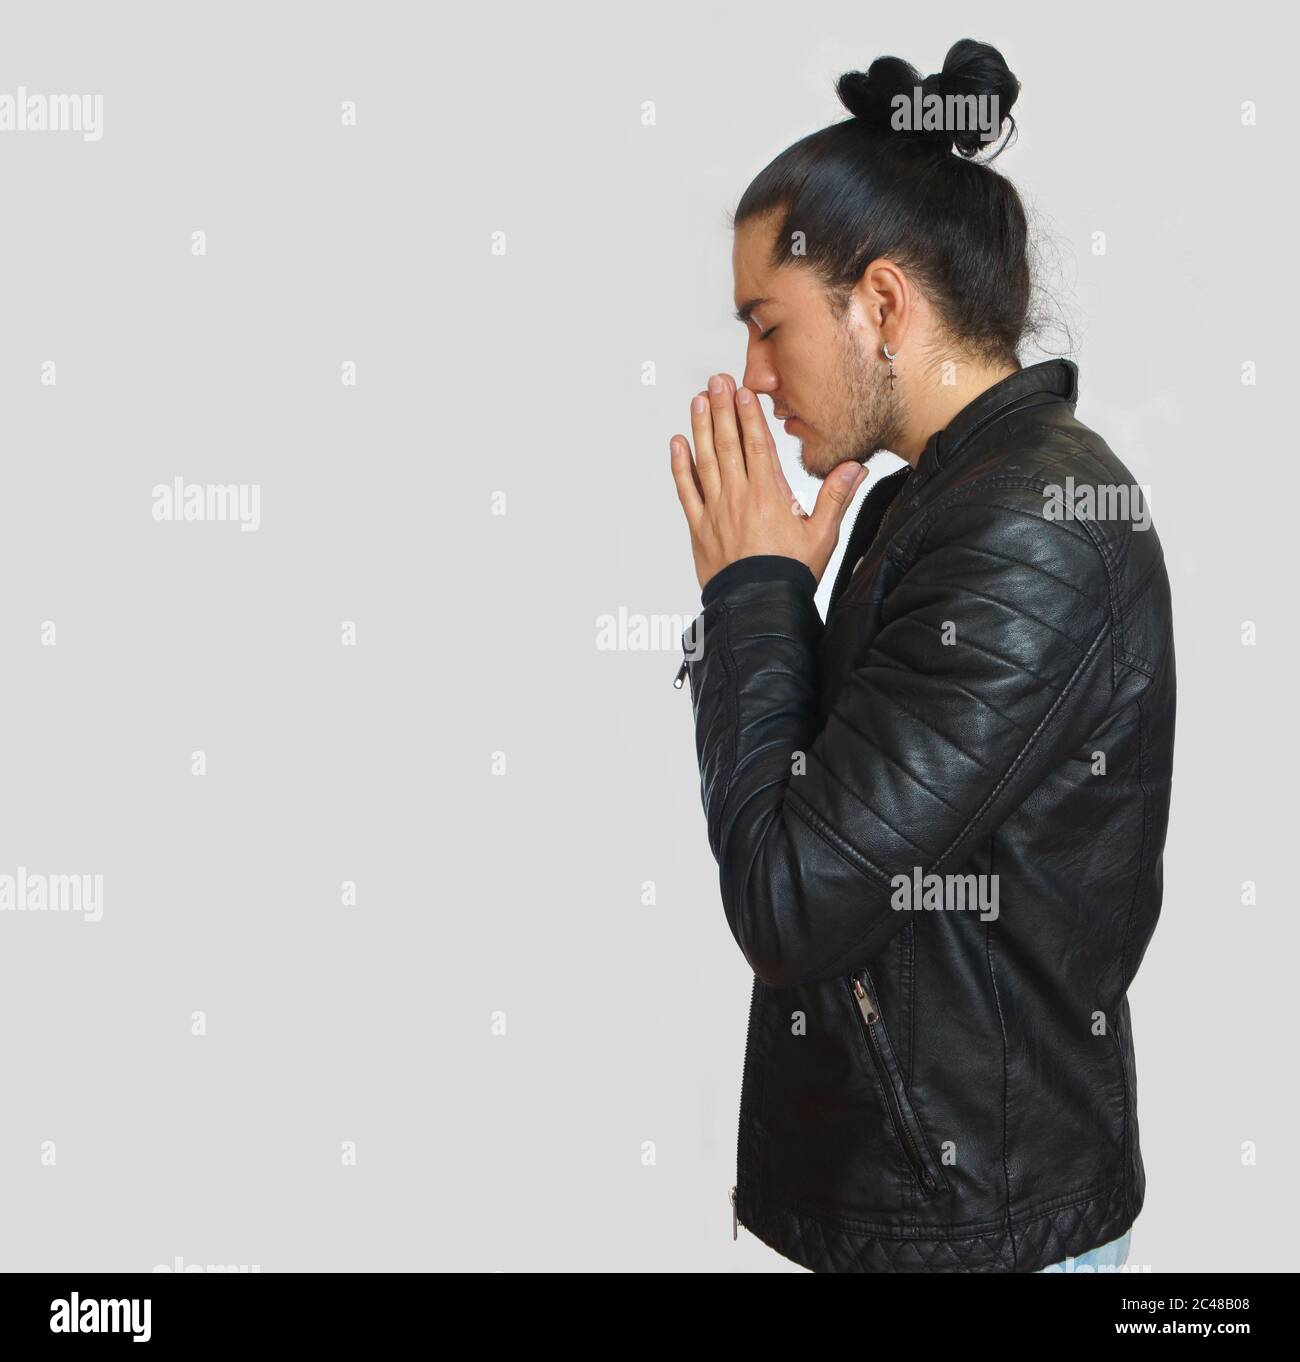 Jeune hispanique avec les cheveux rassemblés fait noeud portant le t-shirt noir et la veste en cuir noir, avec ses mains jointes en position de prière avec crouppé Banque D'Images